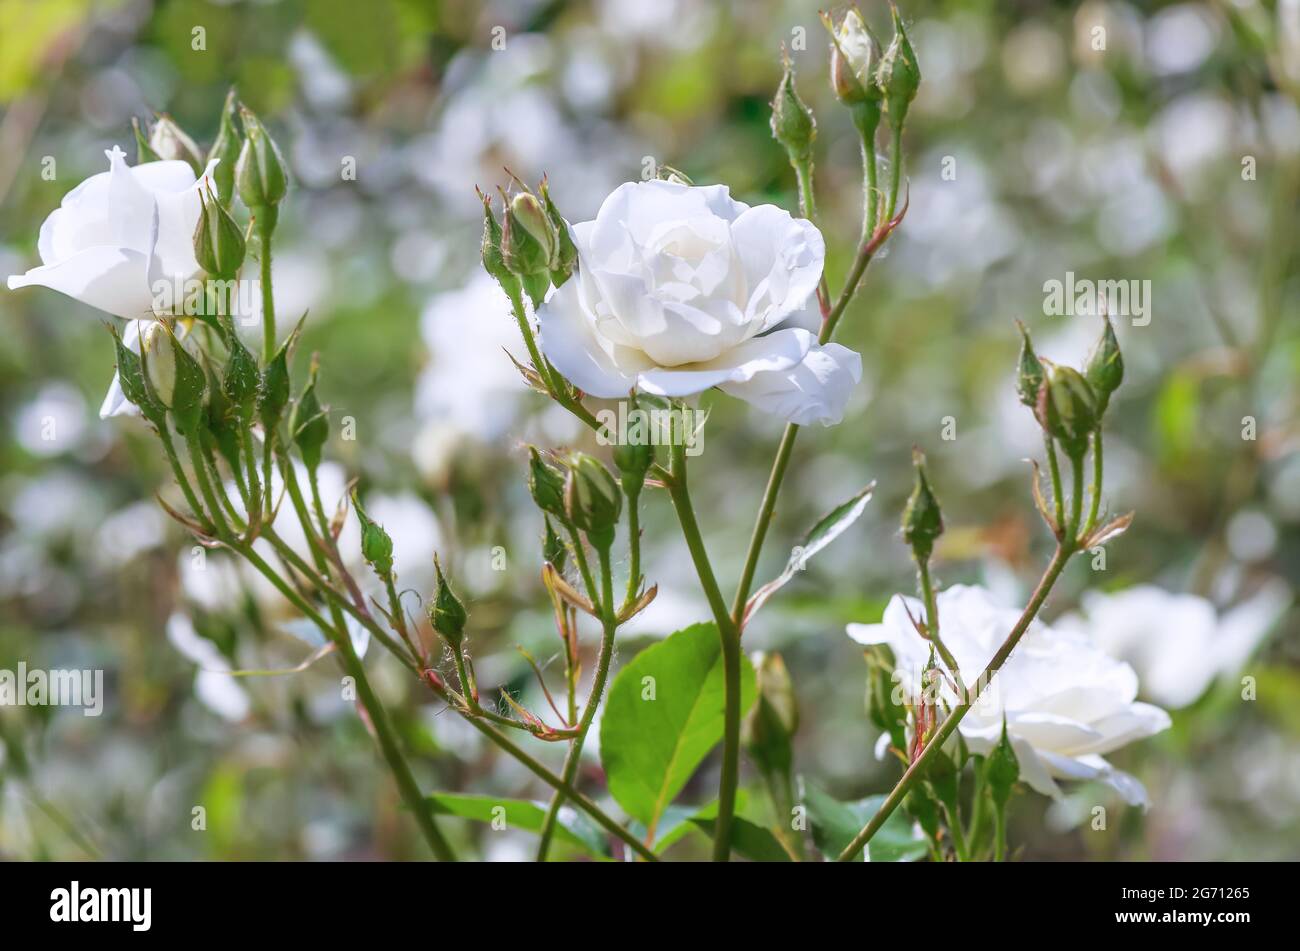 Rose 'White Meiland' es blanco, flores dobles, tamaño mediano, 6-8 cm, recolectadas en inflorescencias de 5-10 pzs. Arbusto muy extendido. Foto de stock